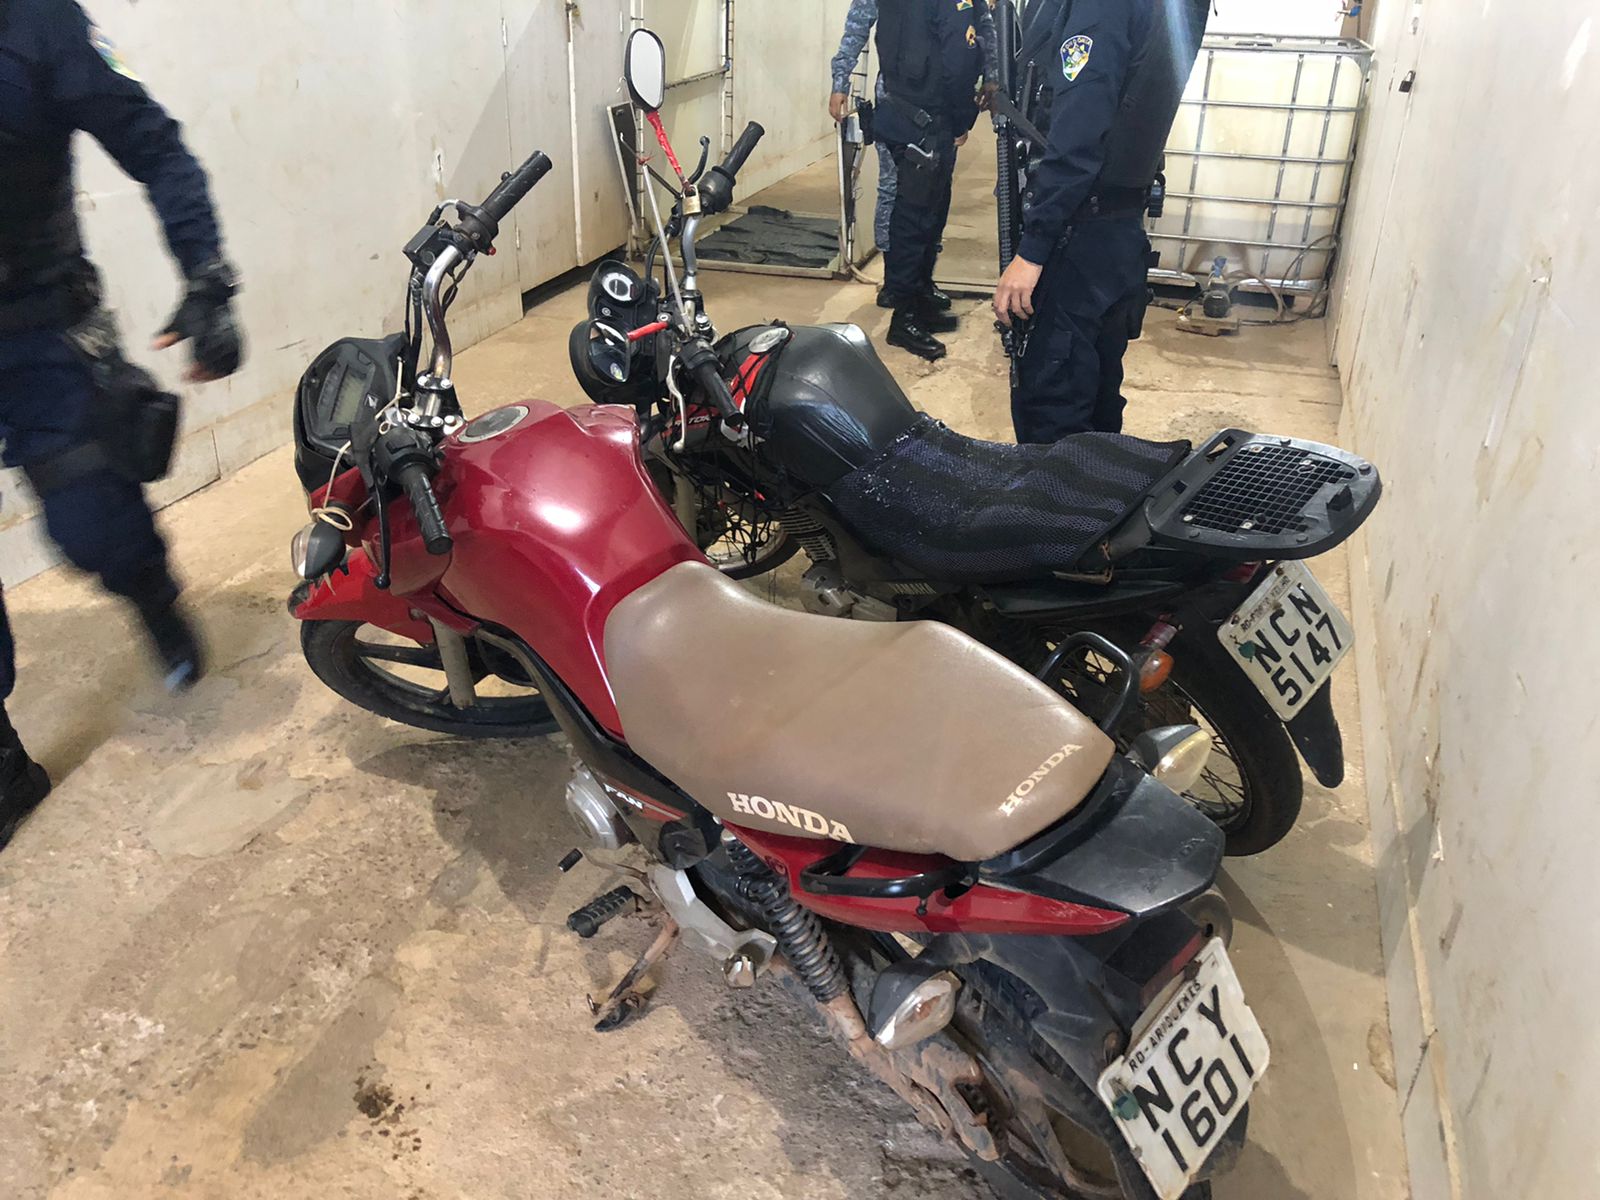 ENXUGANDO GELO: Polícia prende quadrilha com armas e motos roubadas no Residencial Morar Melhor - News Rondônia